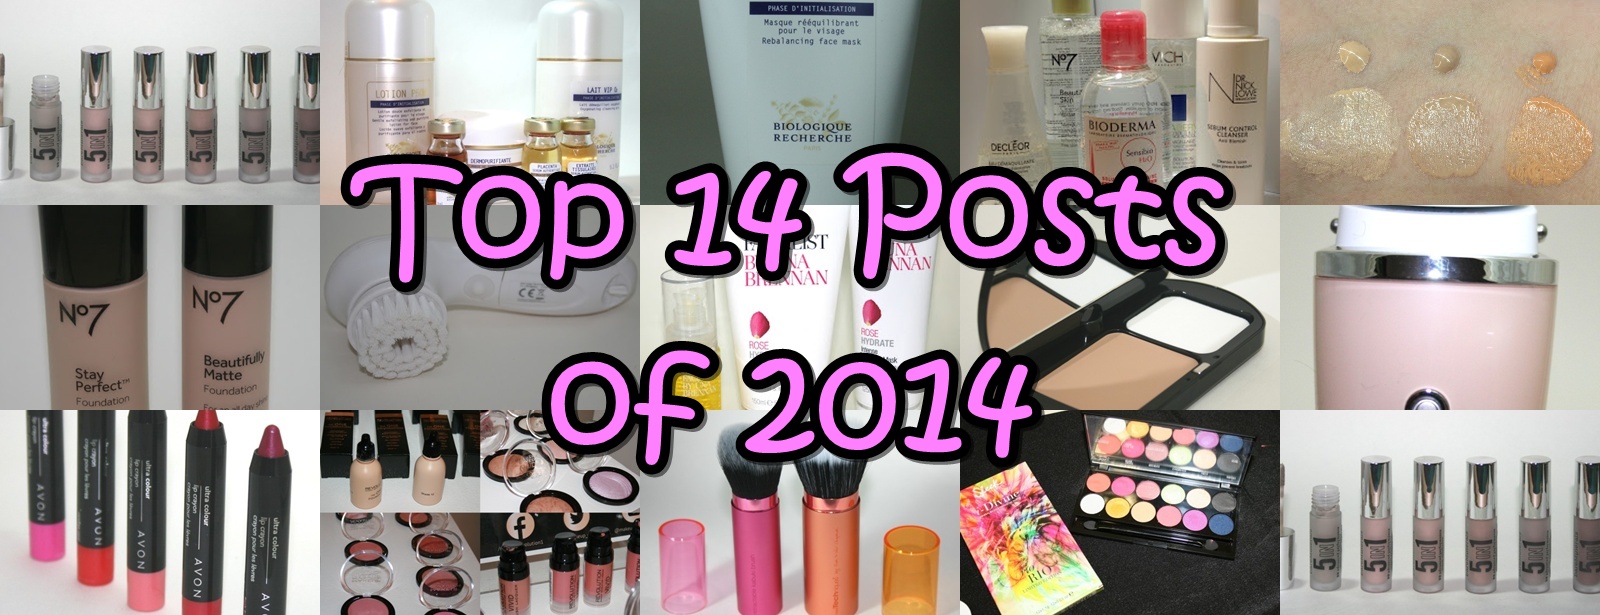 Top 14 Posts of 2014